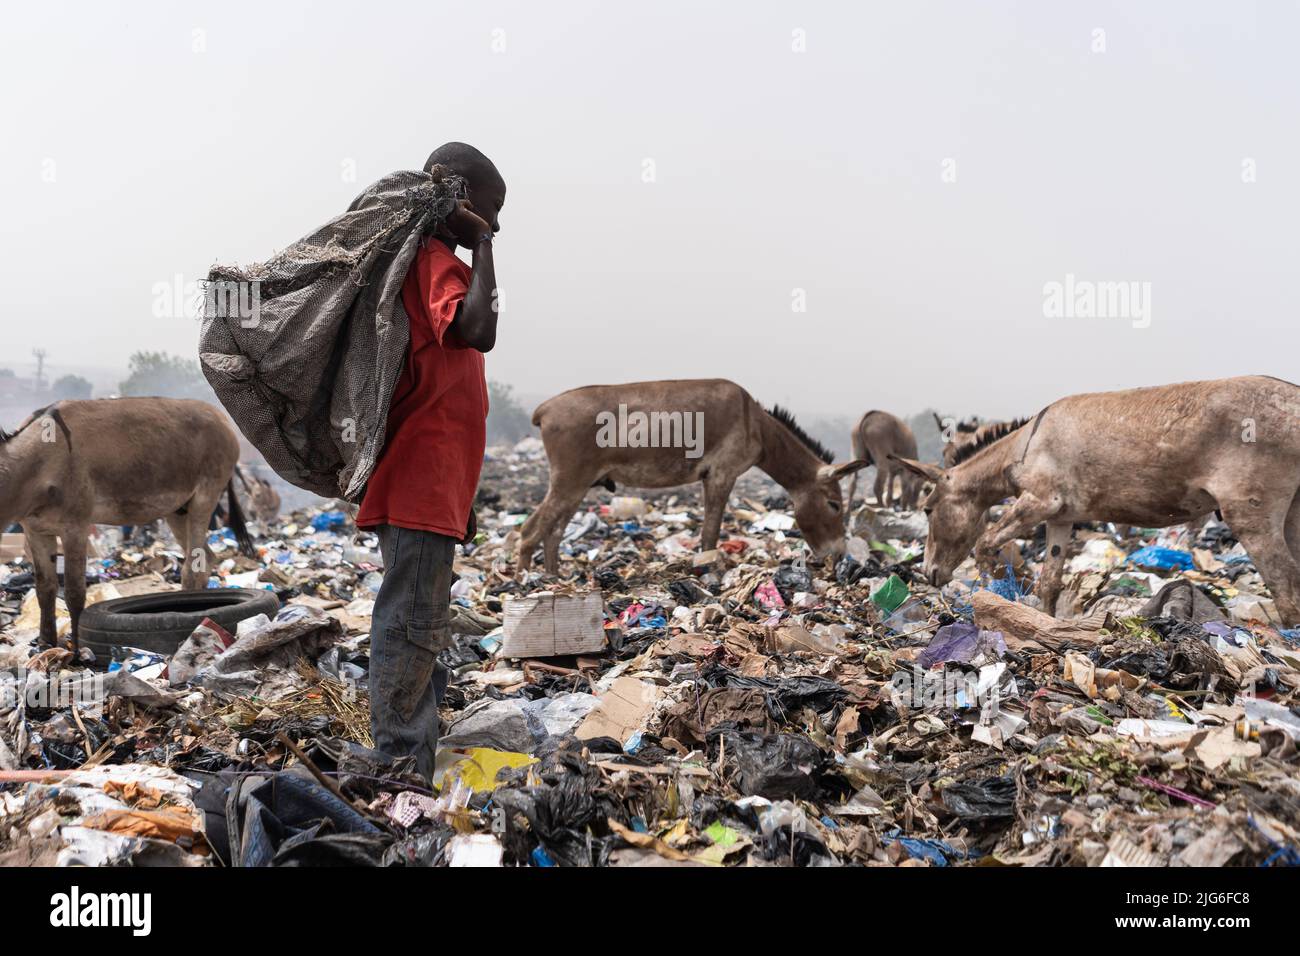 Seul Arrican garçon debout dans une décharge avec un sac en plastique noir sur son épaule à la recherche de matériaux réutilisables, entouré de broutage affamé d'ordures Banque D'Images